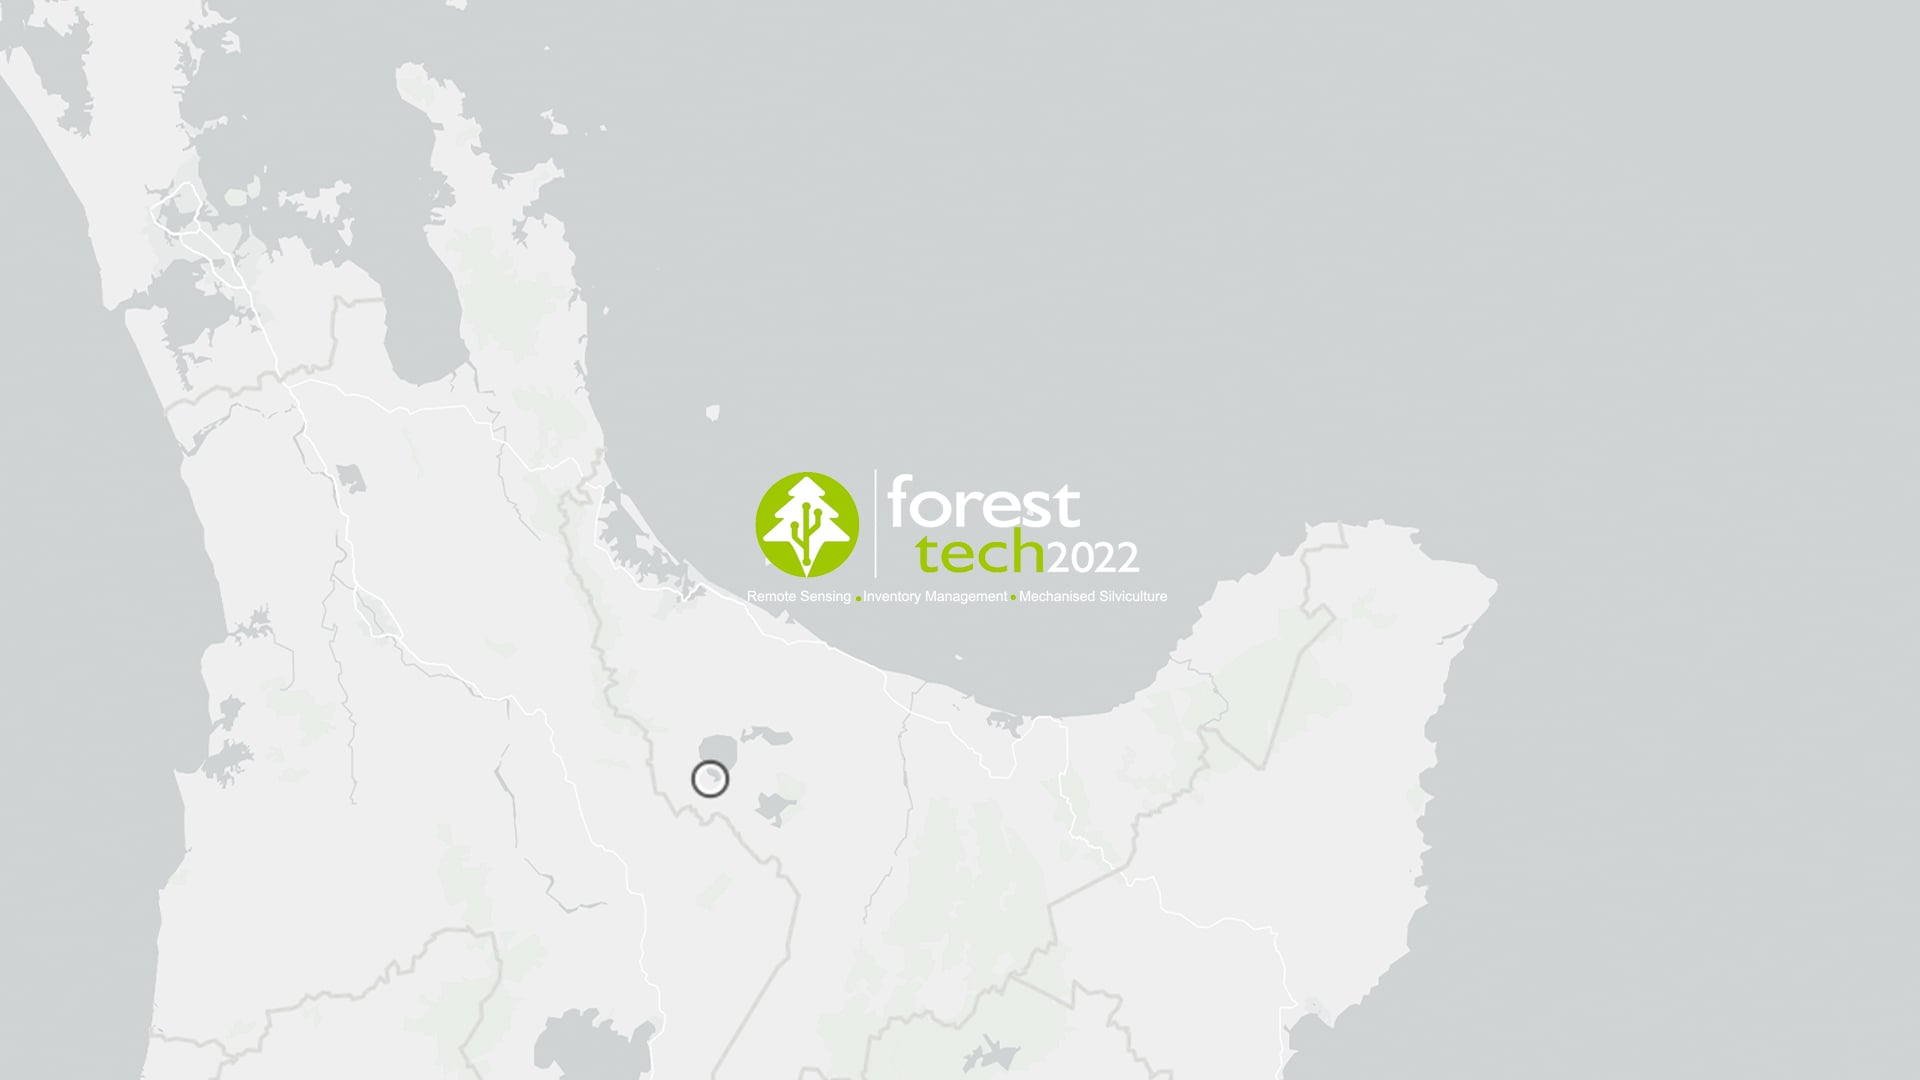 ForestTech 2022 New Zealand